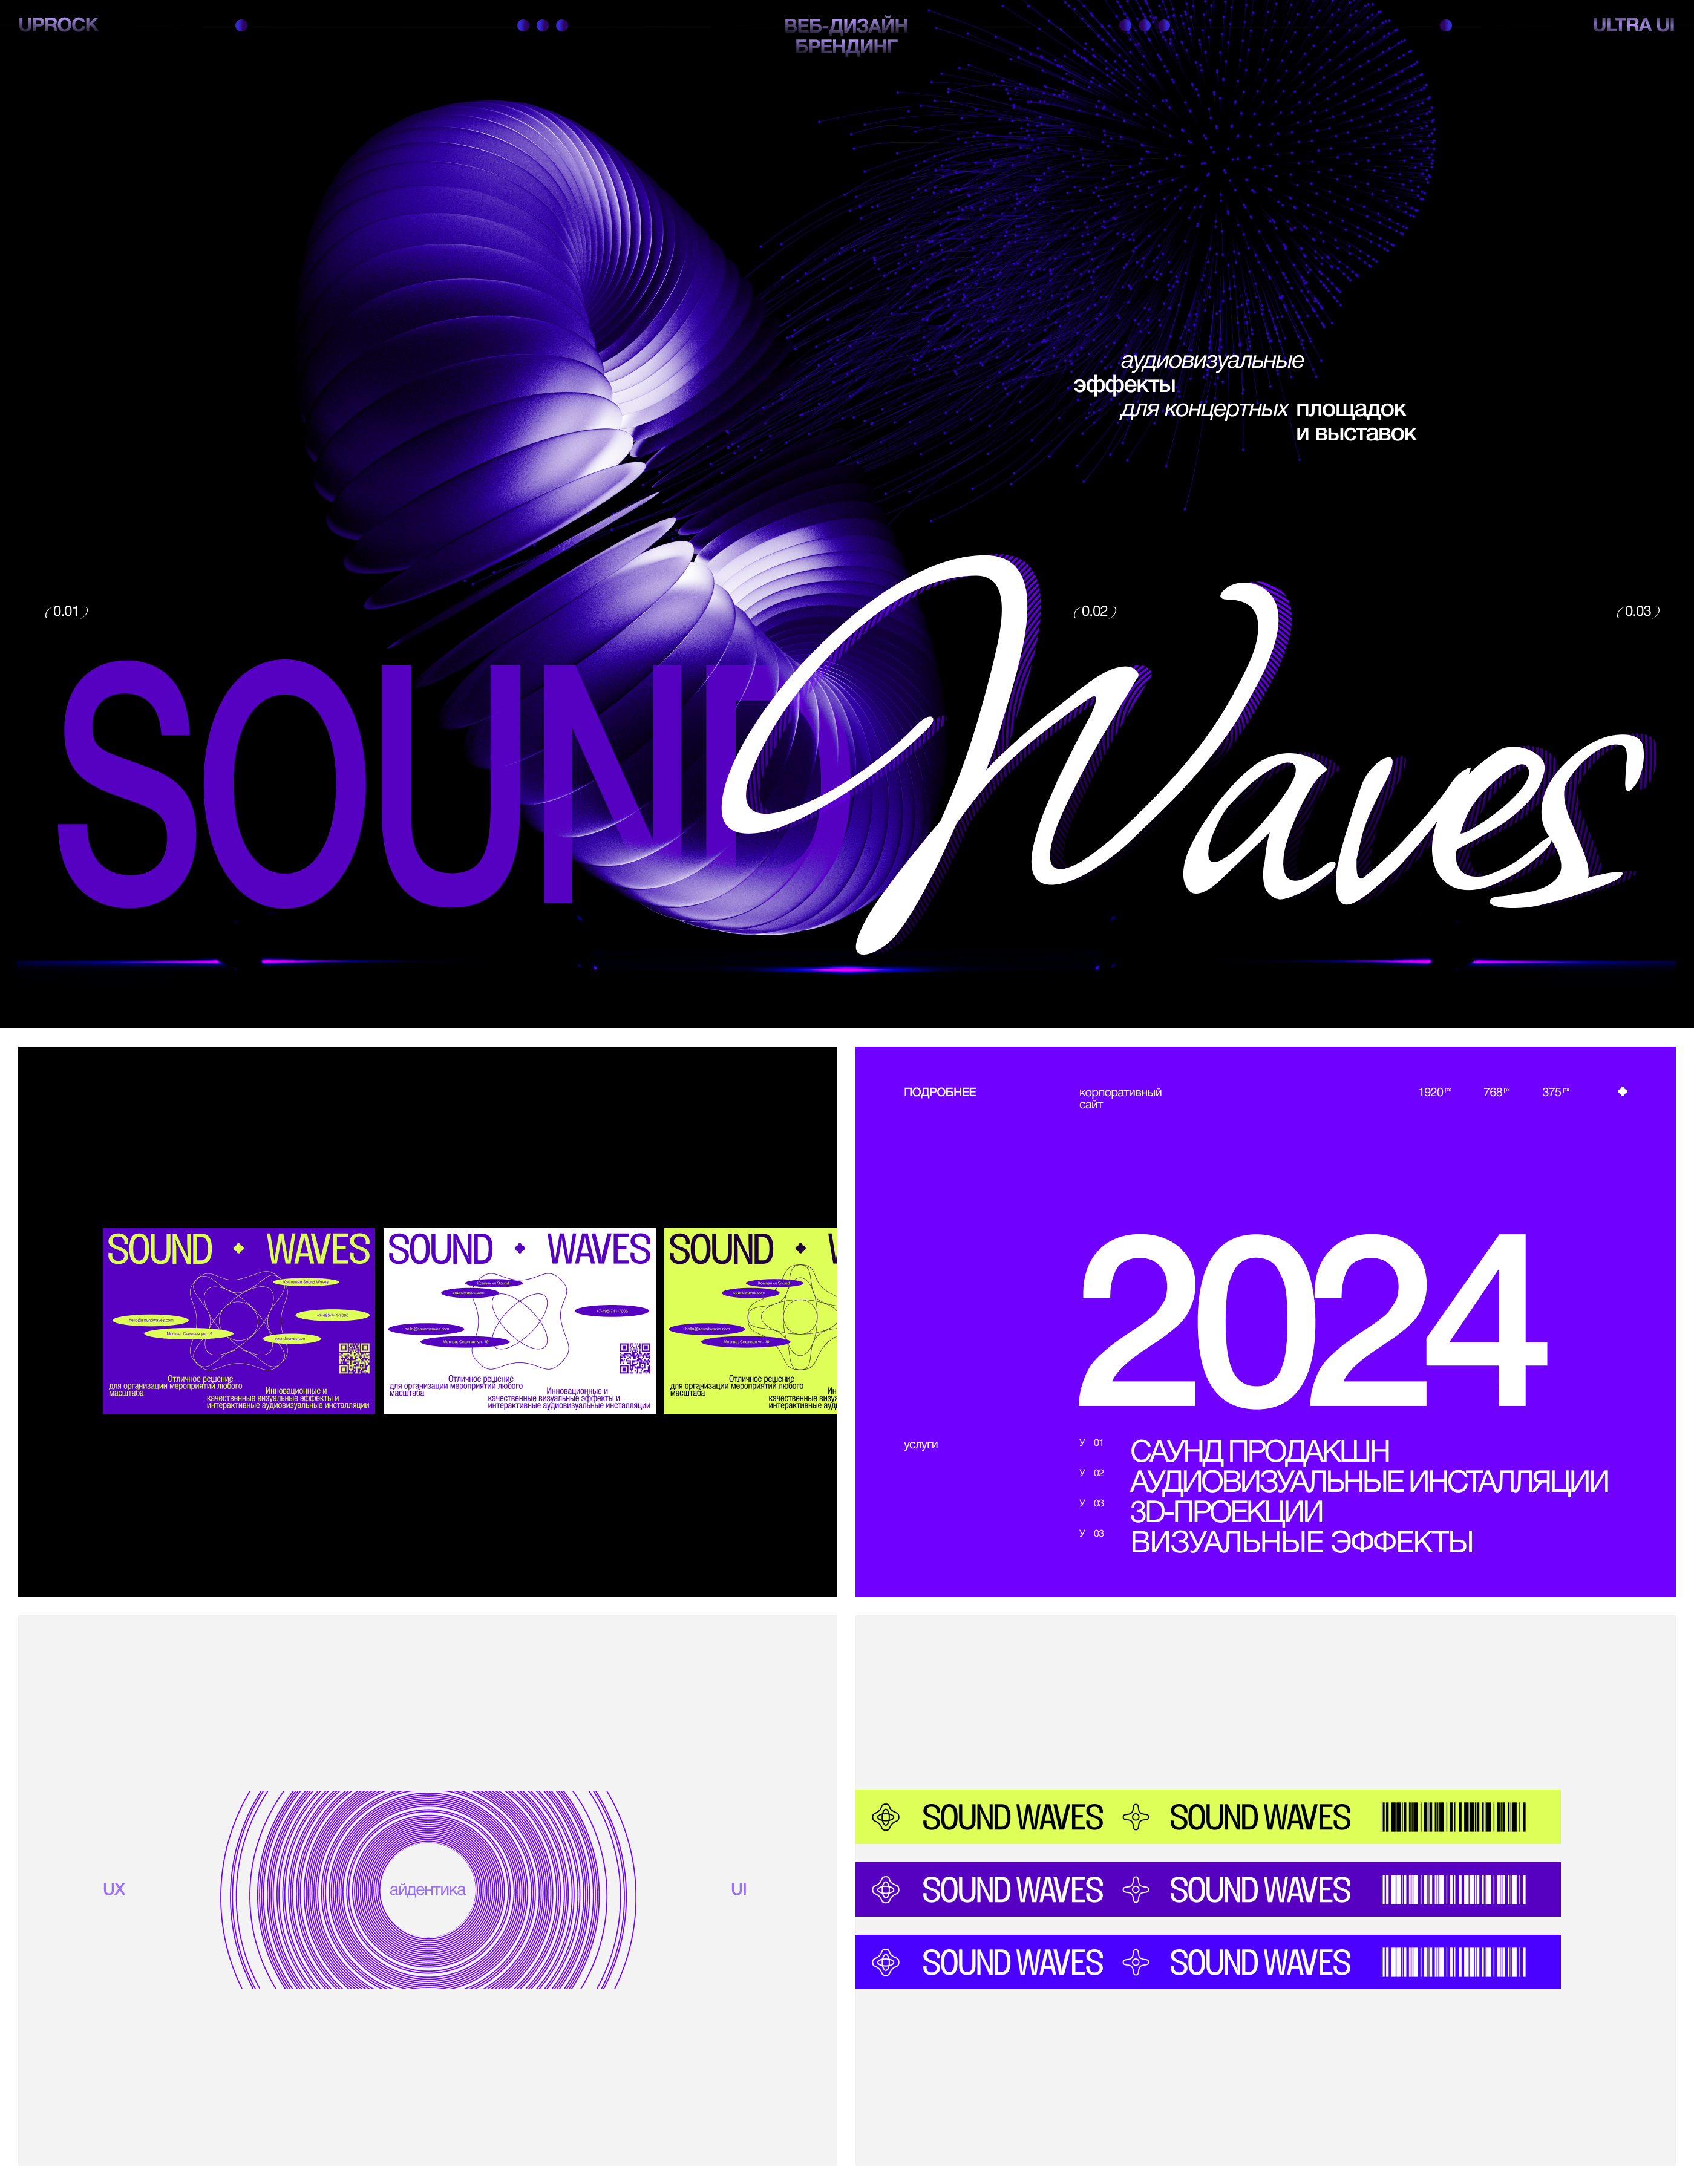 Sound Waves — Изображение №1 — Интерфейсы, Брендинг на Dprofile